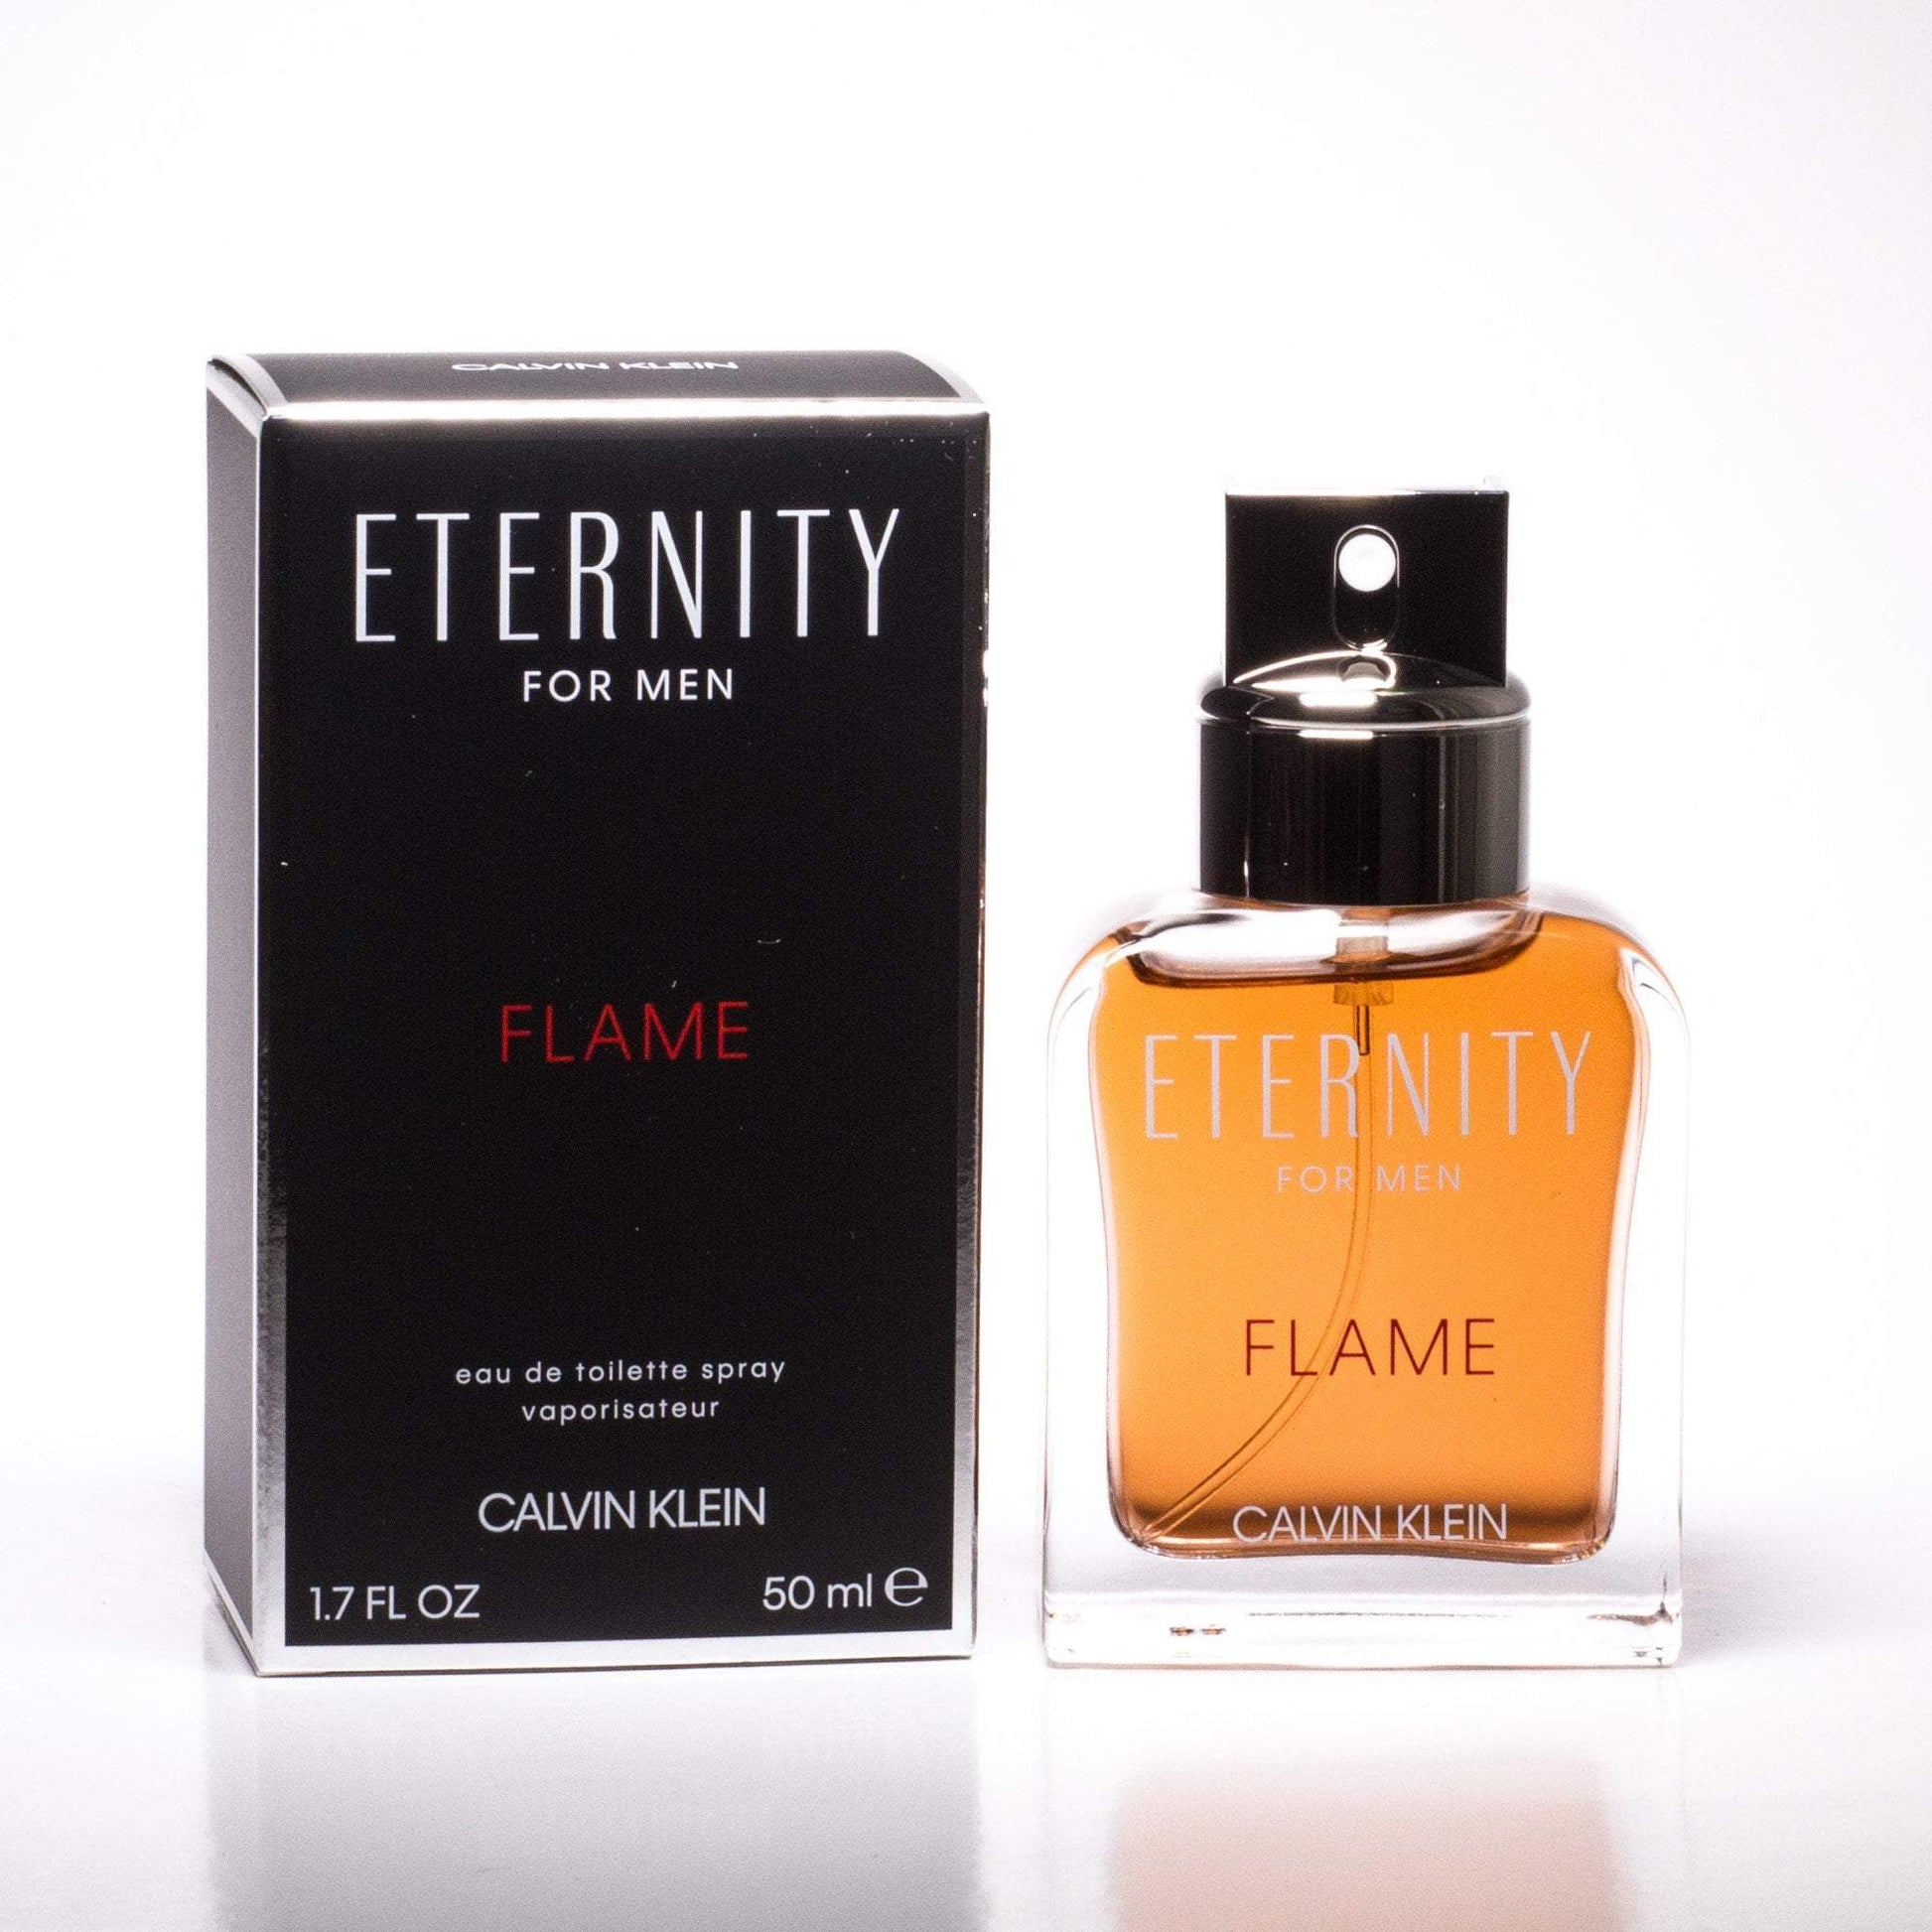 Flame Eau de Toilette Spray for Men by Calvin Klein Click to open in modal